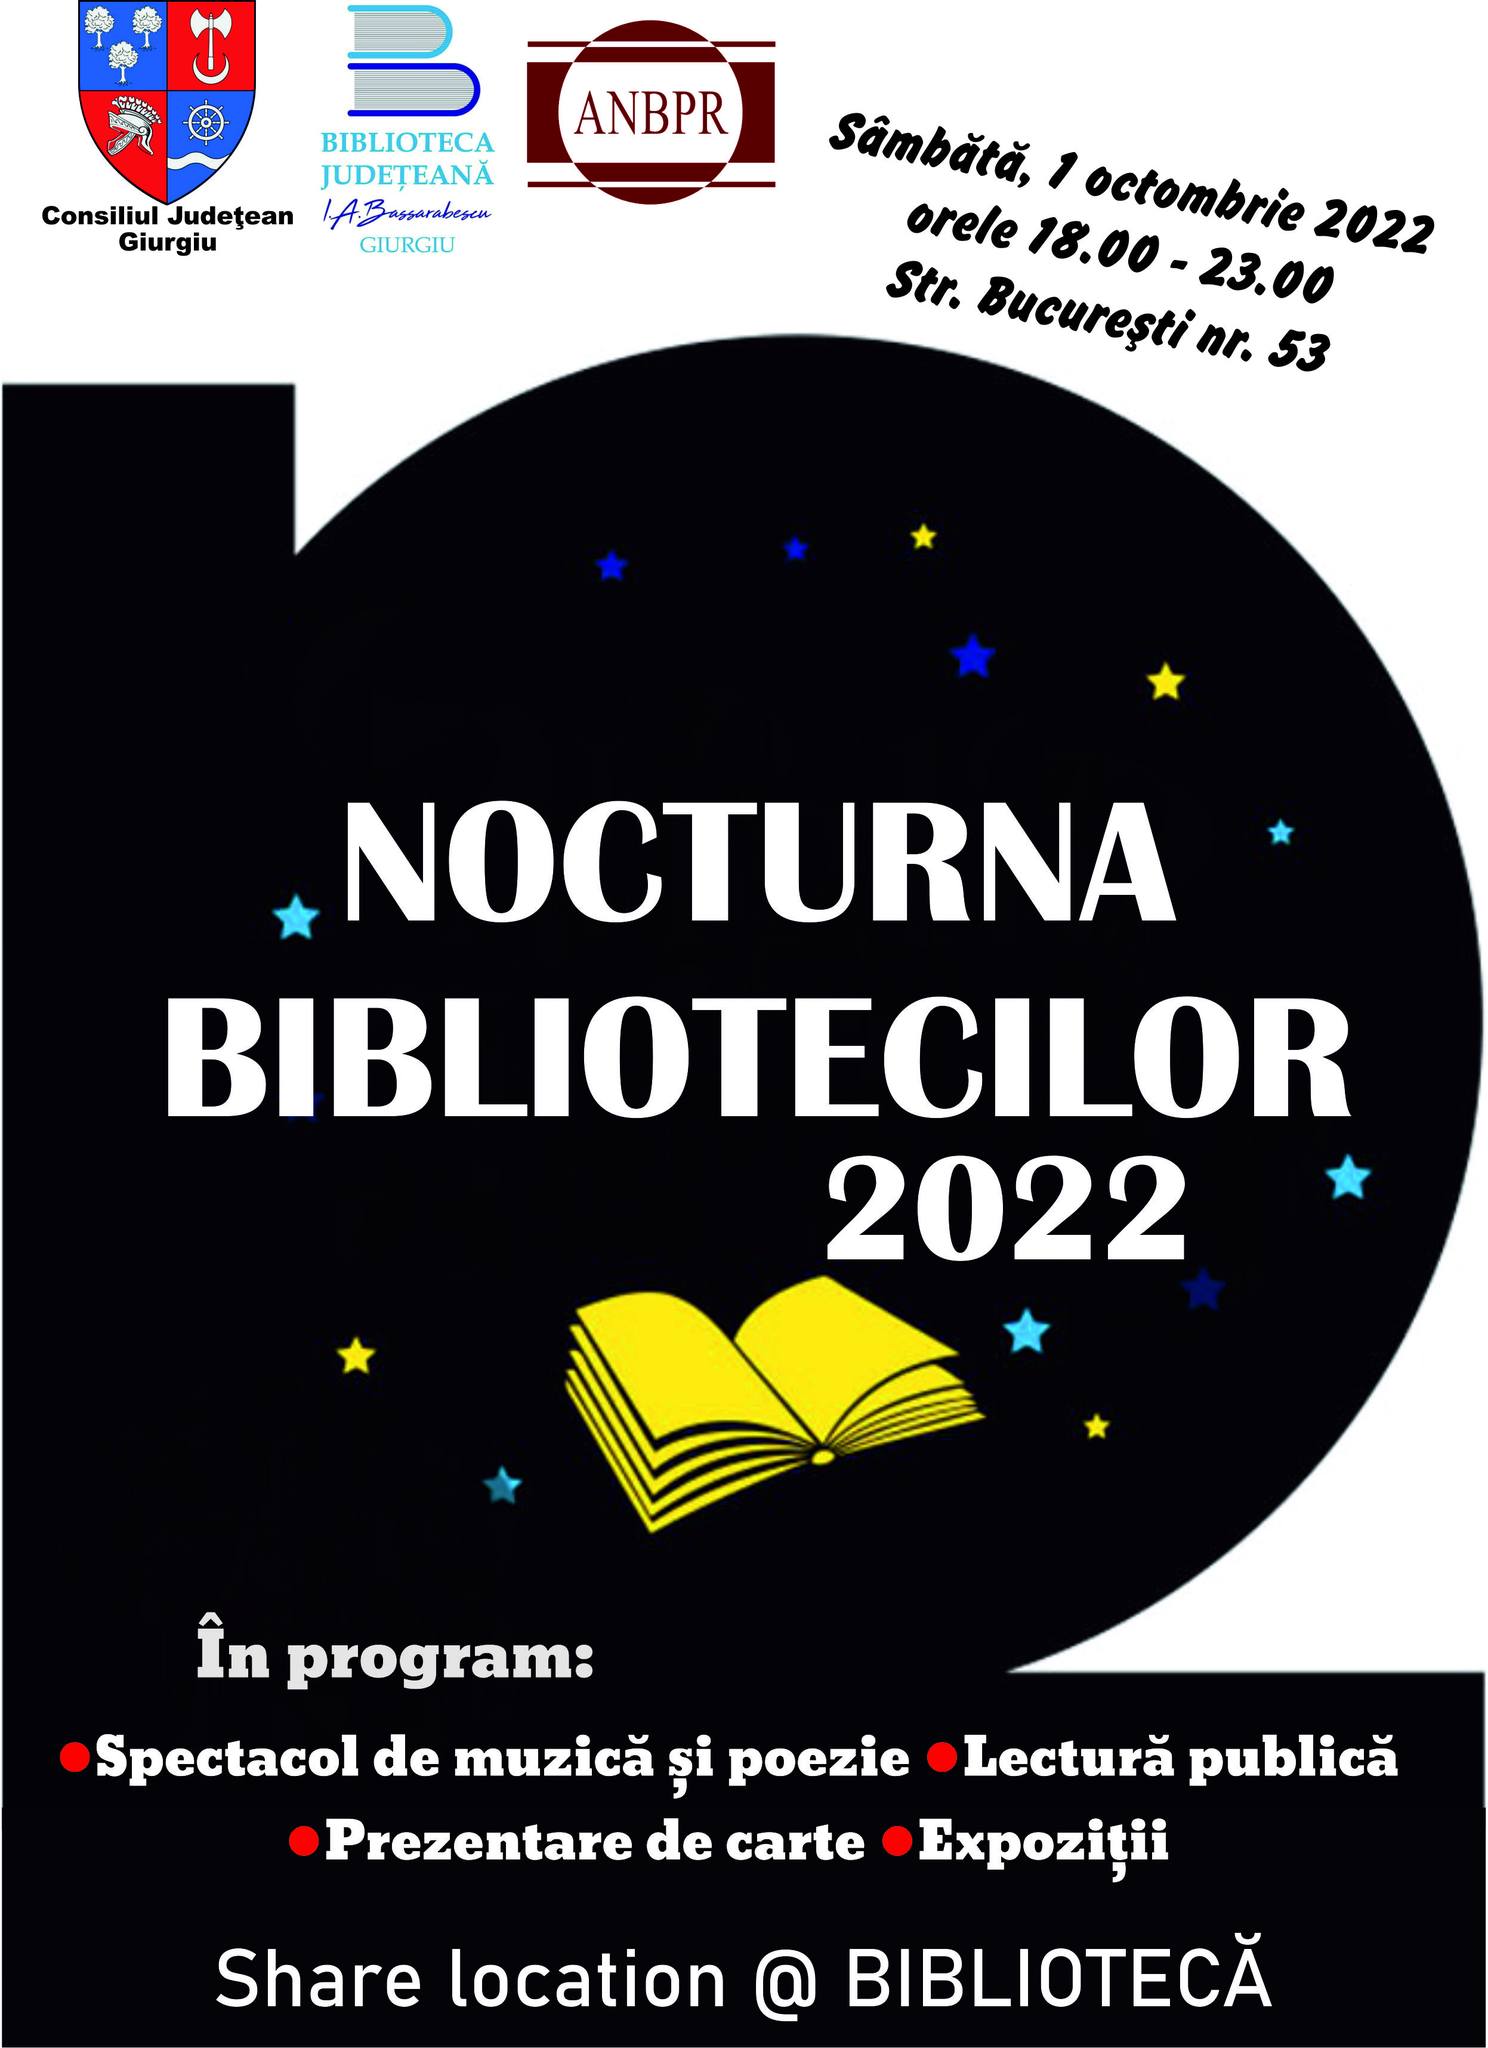 NOCTURNA BIBLIOTECII, ediția a XIII-a 1 OCTOMBRIE 2022, în intervalul orar 18.00-23.00